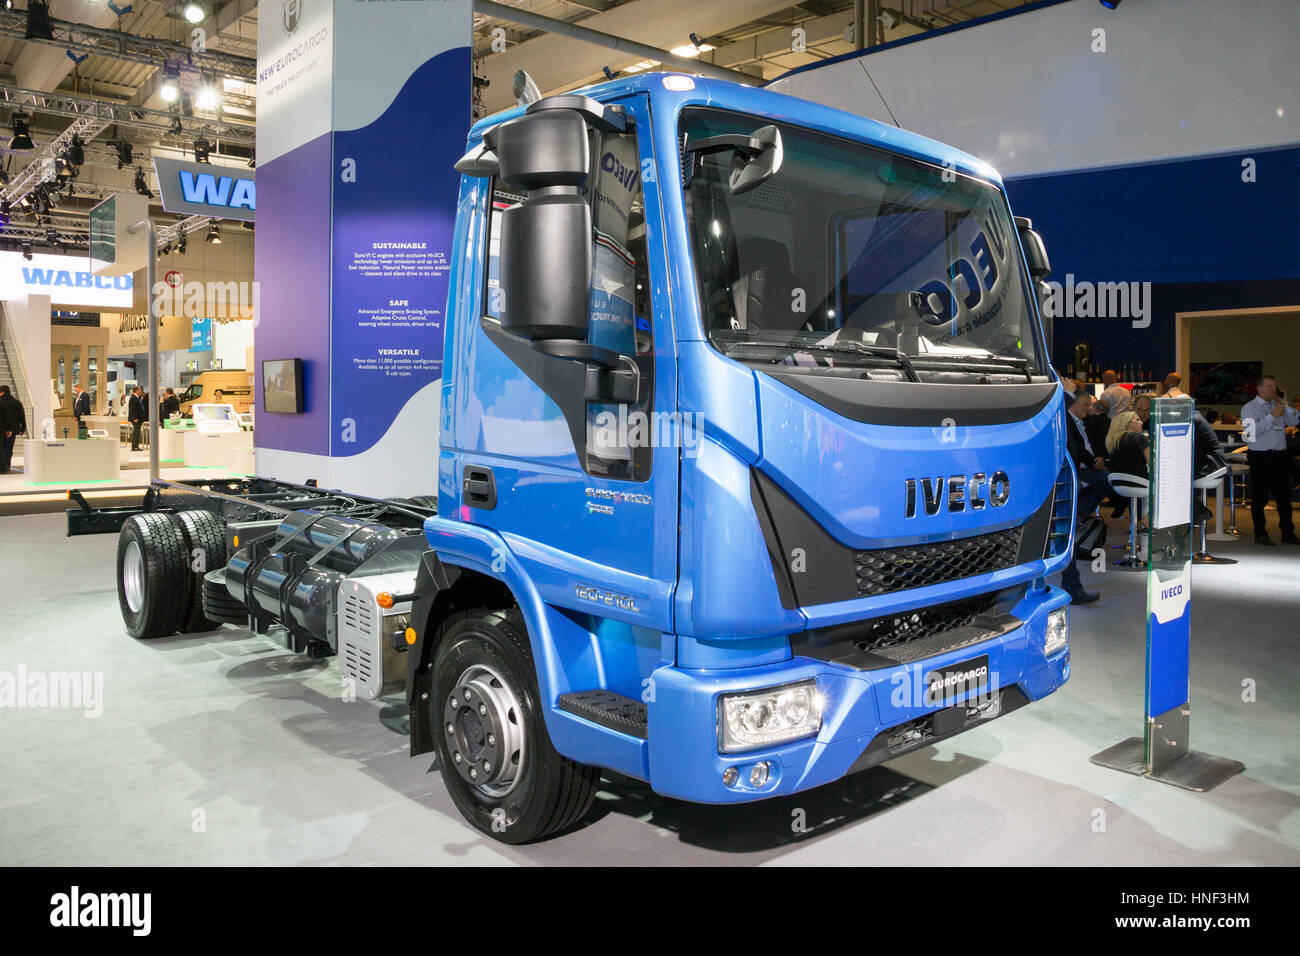 HANNOVER, Deutschland - SEP 21, 2016: Neue IVECO Euro Truck präsentiert auf der Internationalen Automobilausstellung für Nutzfahrzeuge. Stockfoto